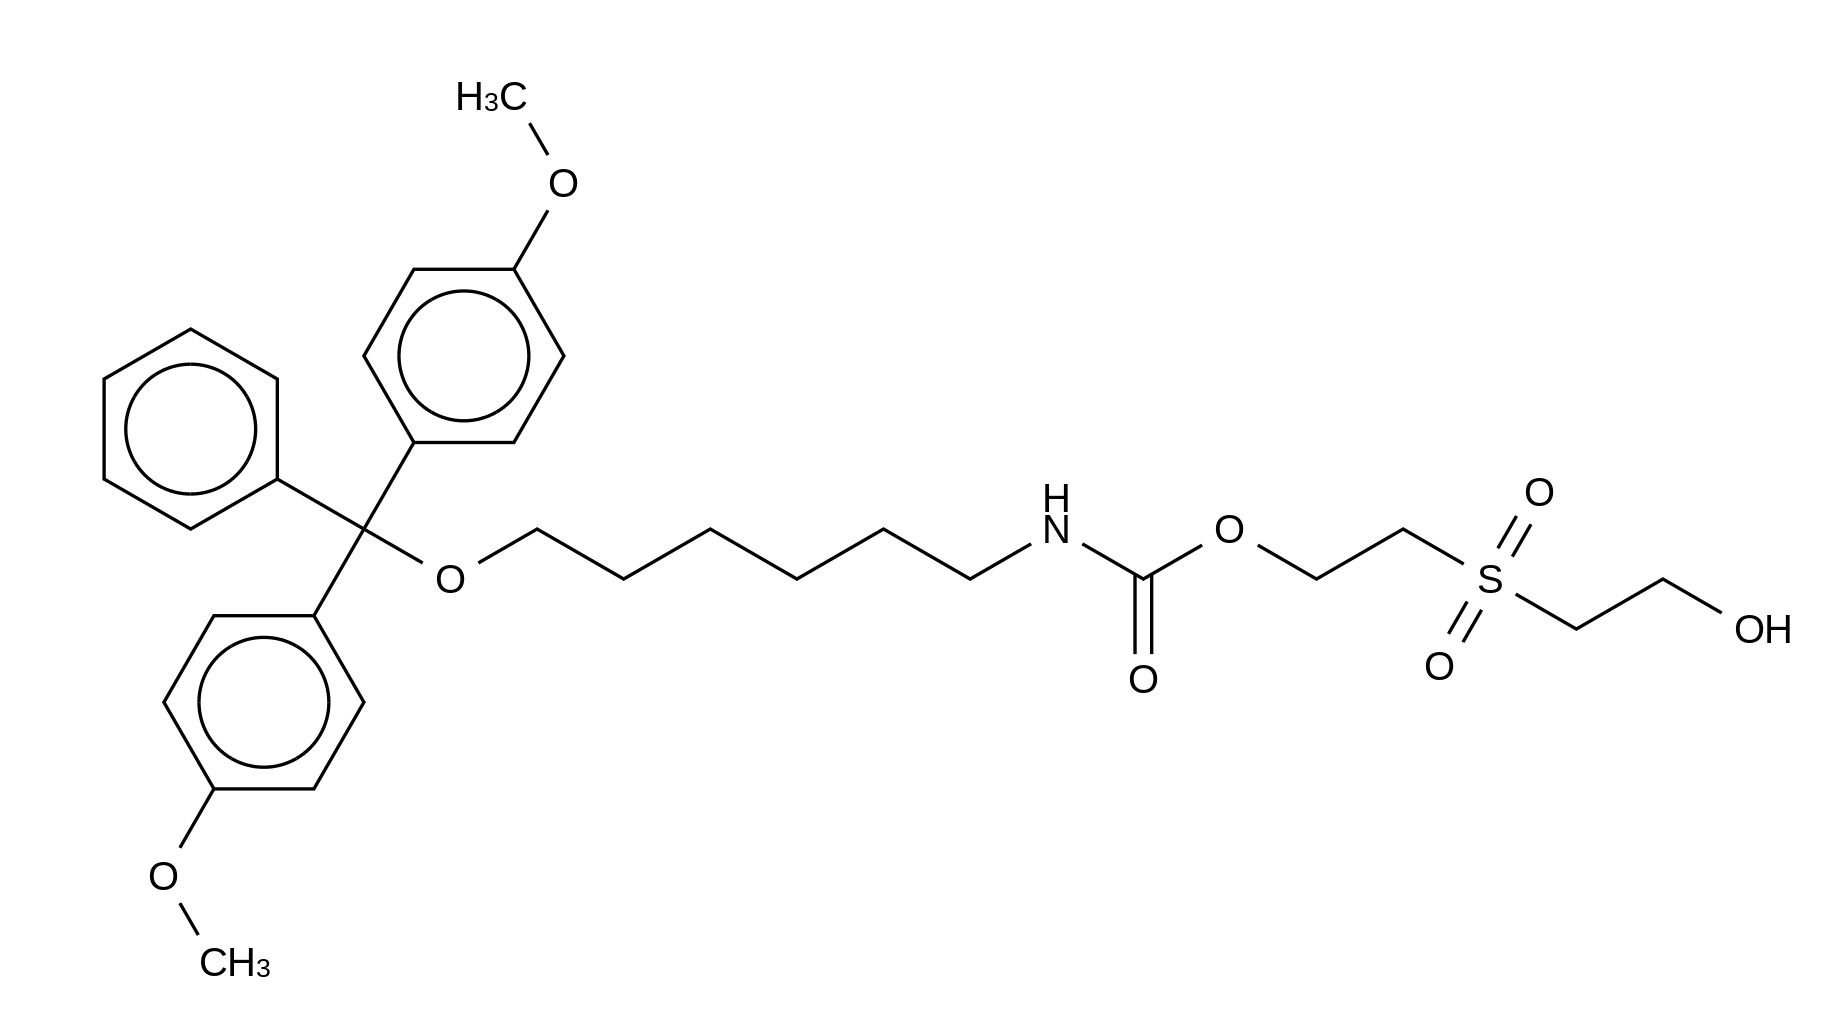 [6-[Bis(4-methoxyphenyl)phenylmethoxy]hexyl]-carbamic Acid 2-[(2-Hydroxyethyl)sulfonyl]ethyl Ester